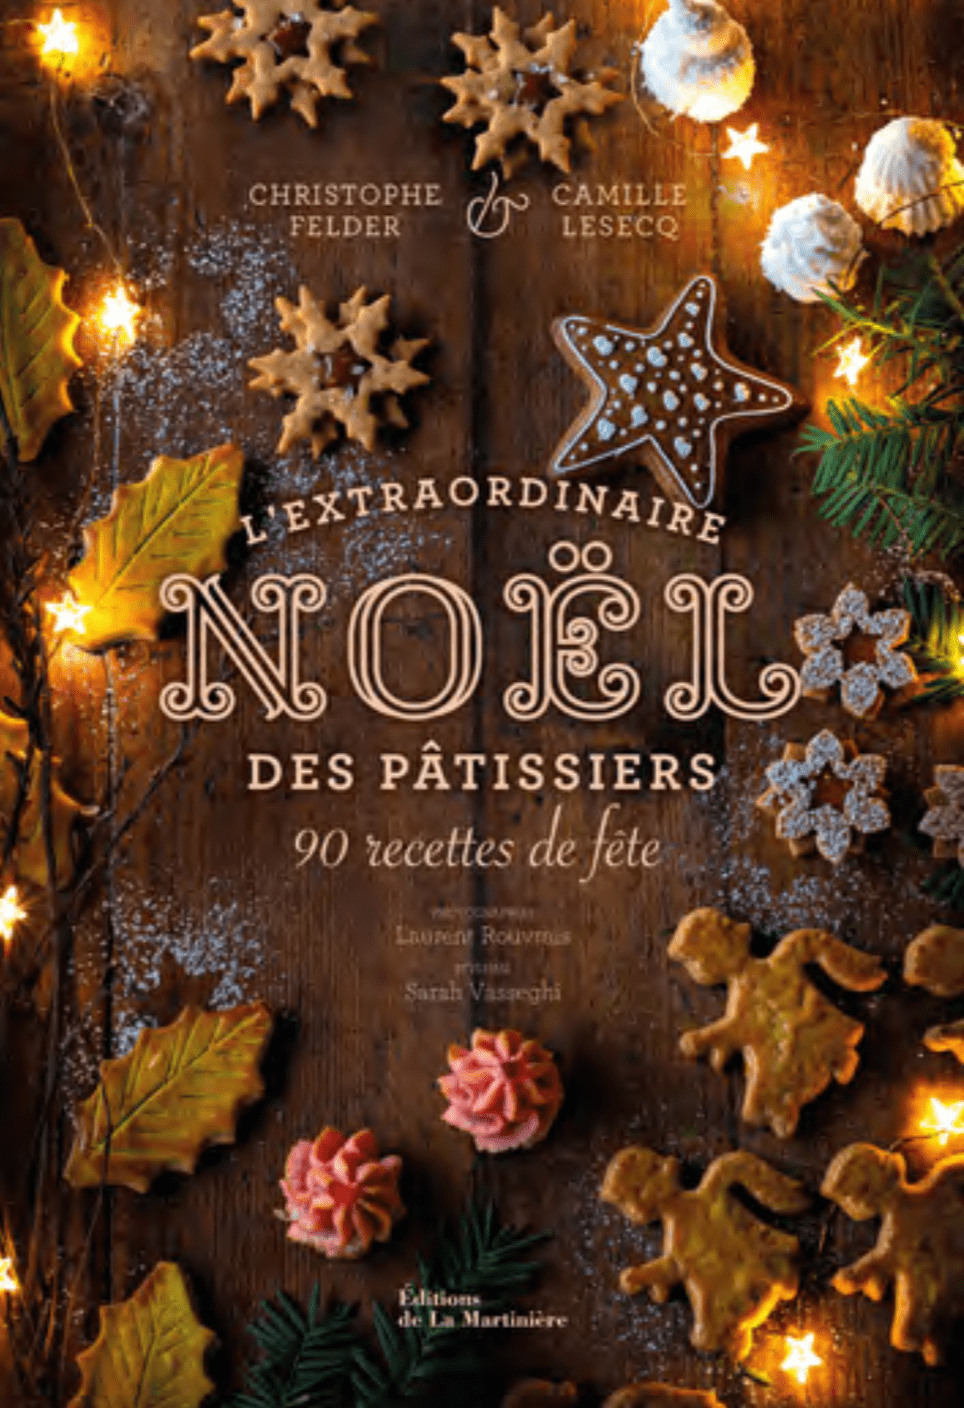 Christophe Felder et Camille Lesecq célèbrent « L’extraordinaire Noël des pâtissiers »